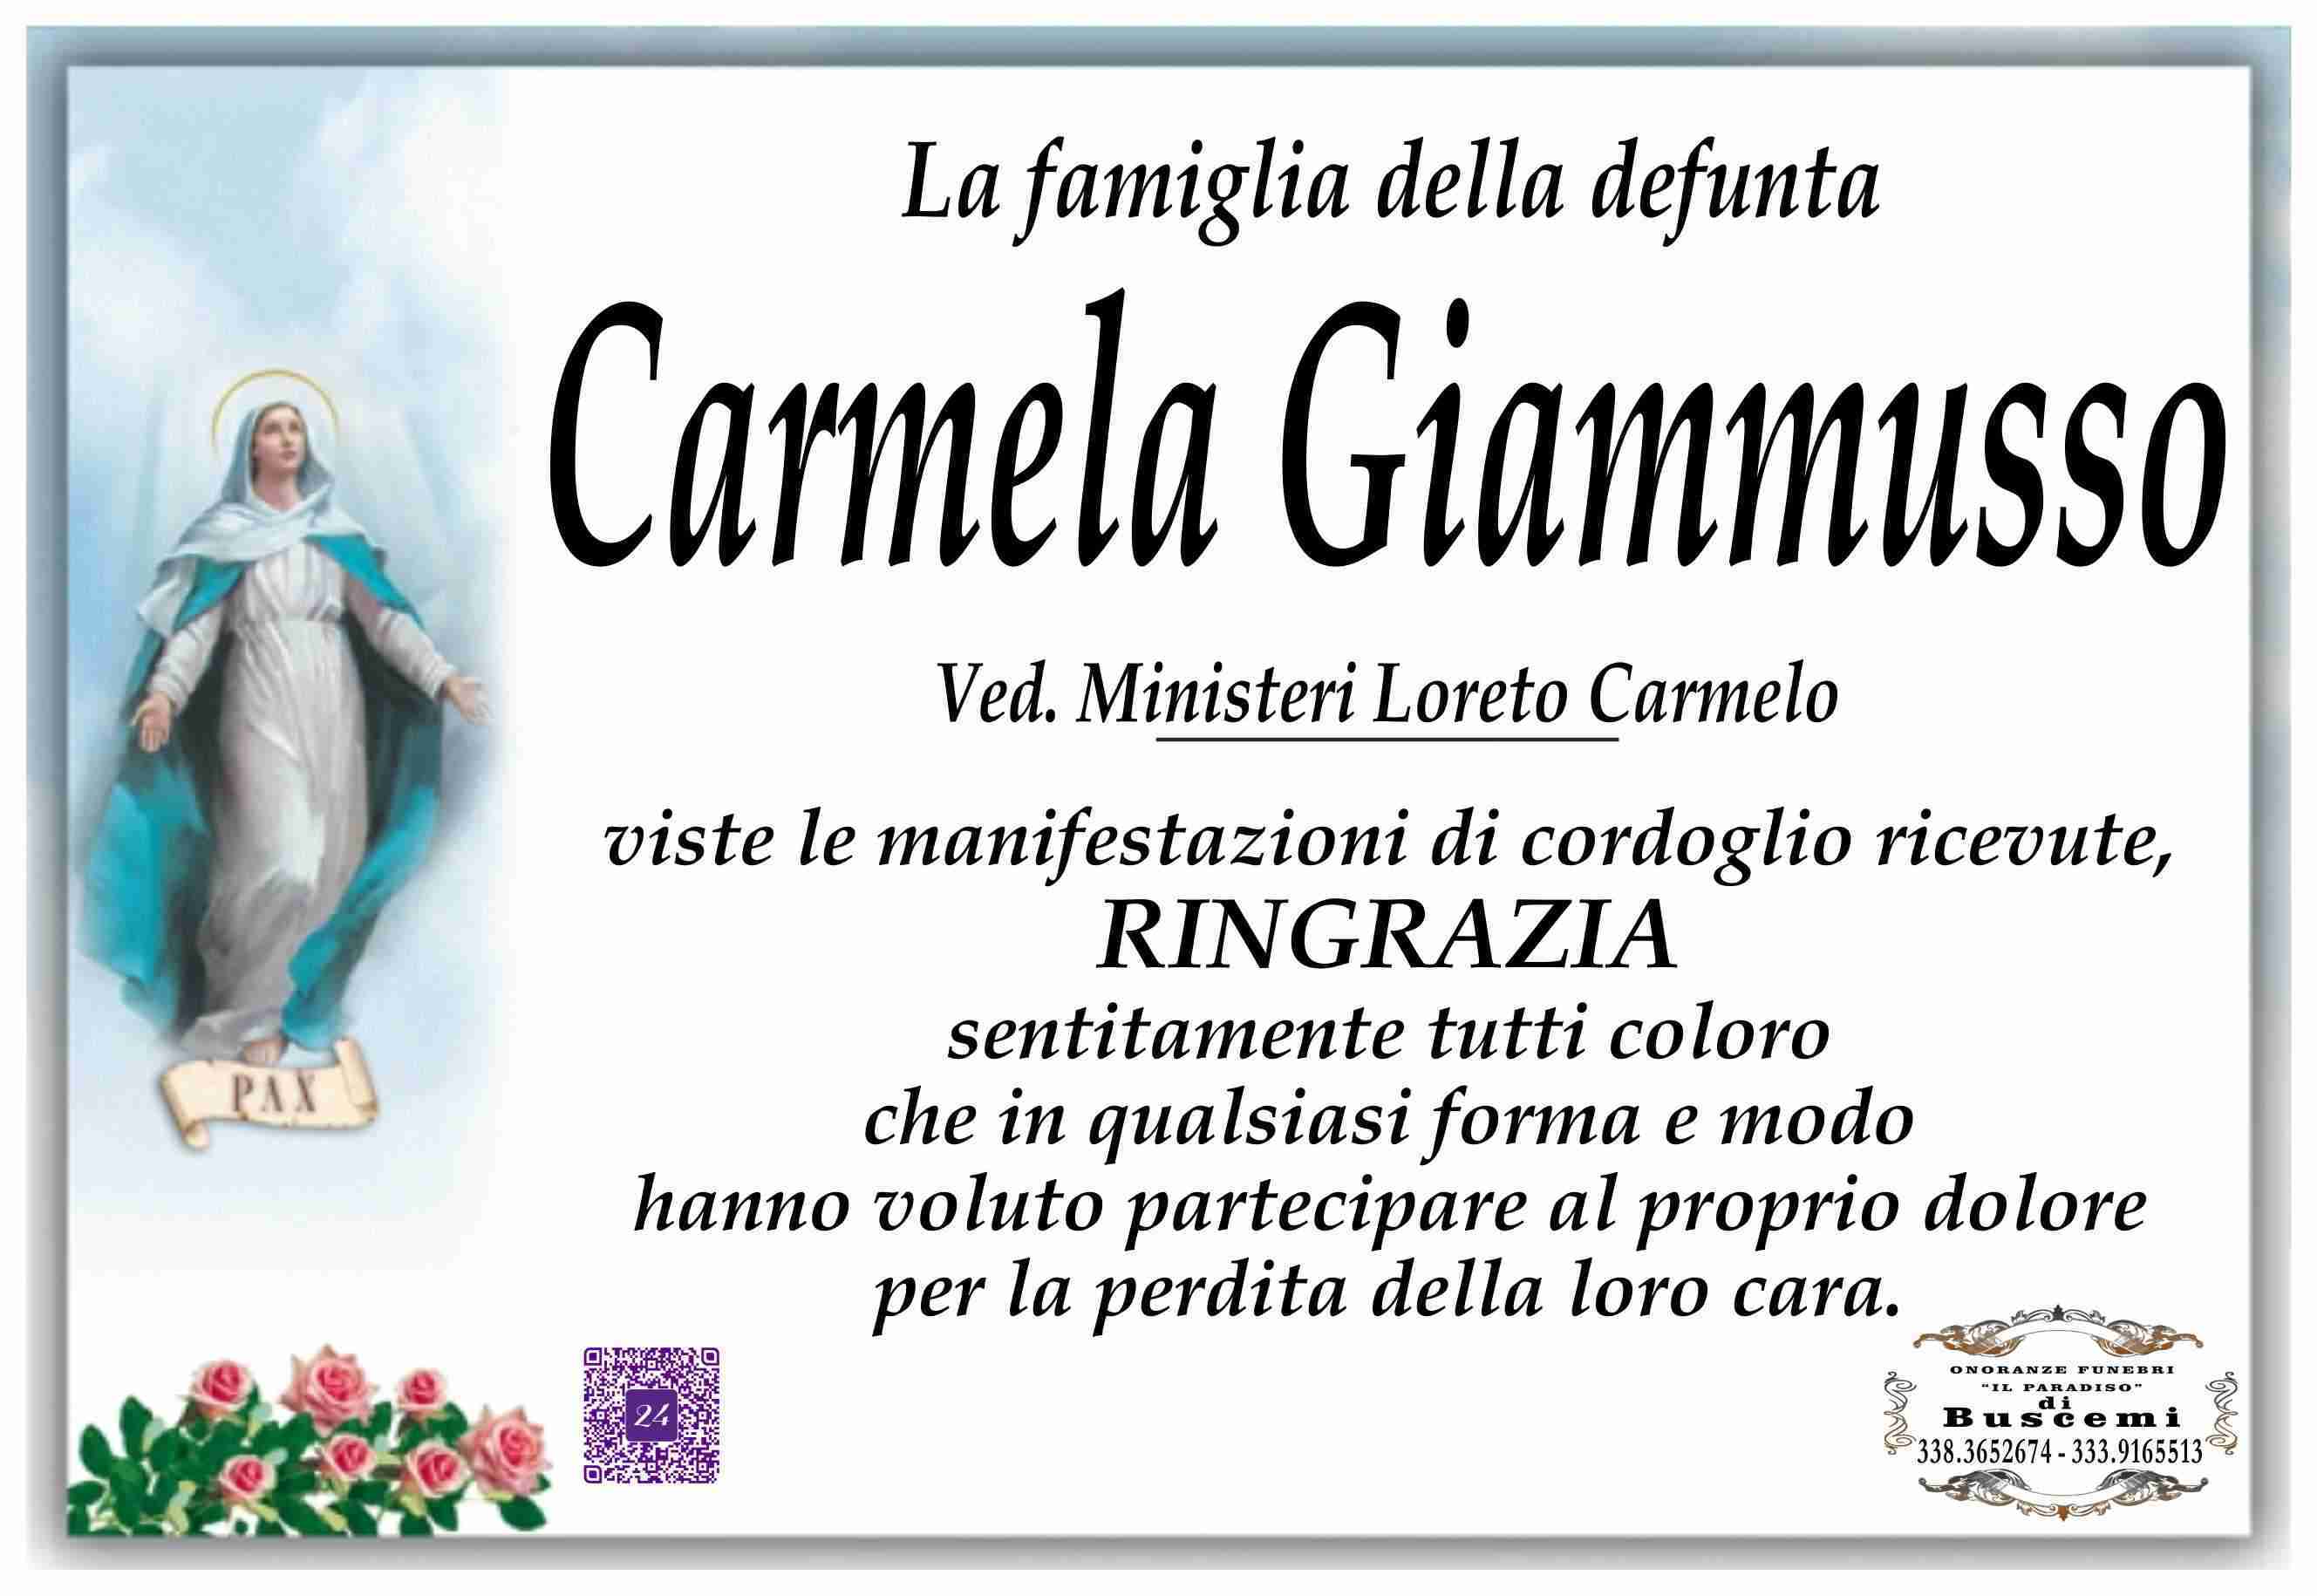 Carmela Giammusso